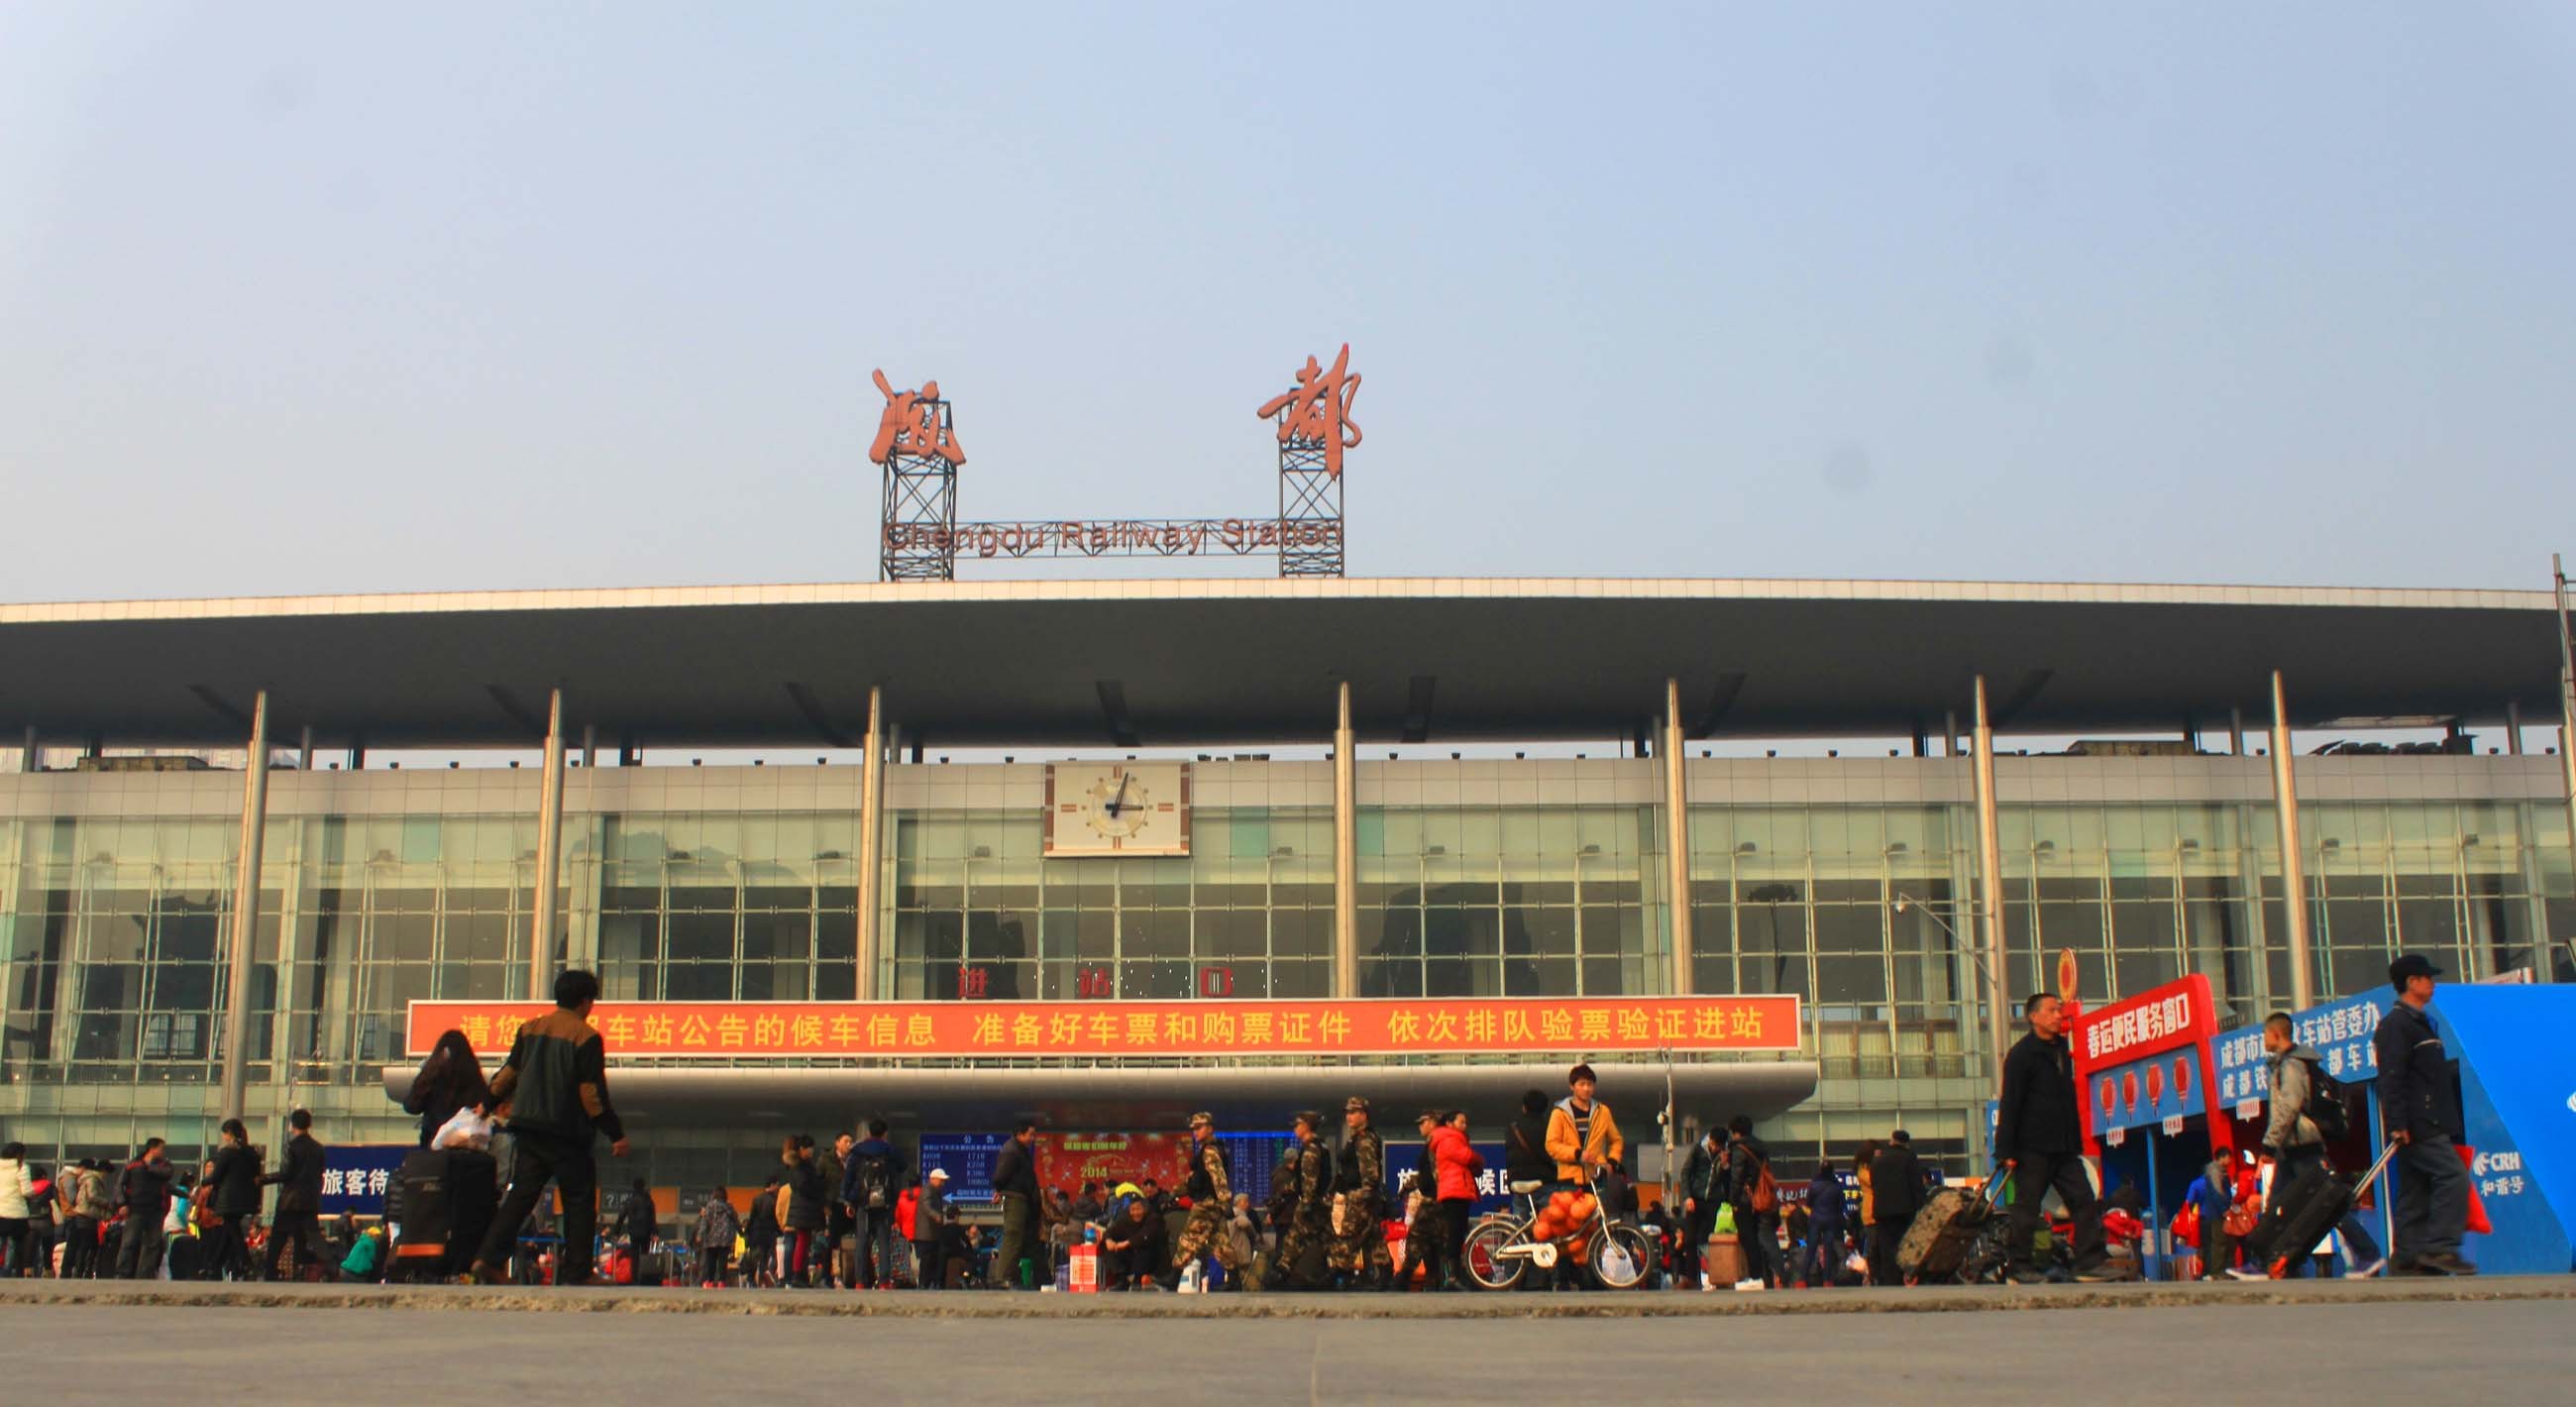 2014年1月24日成都火车北站春运时的广场